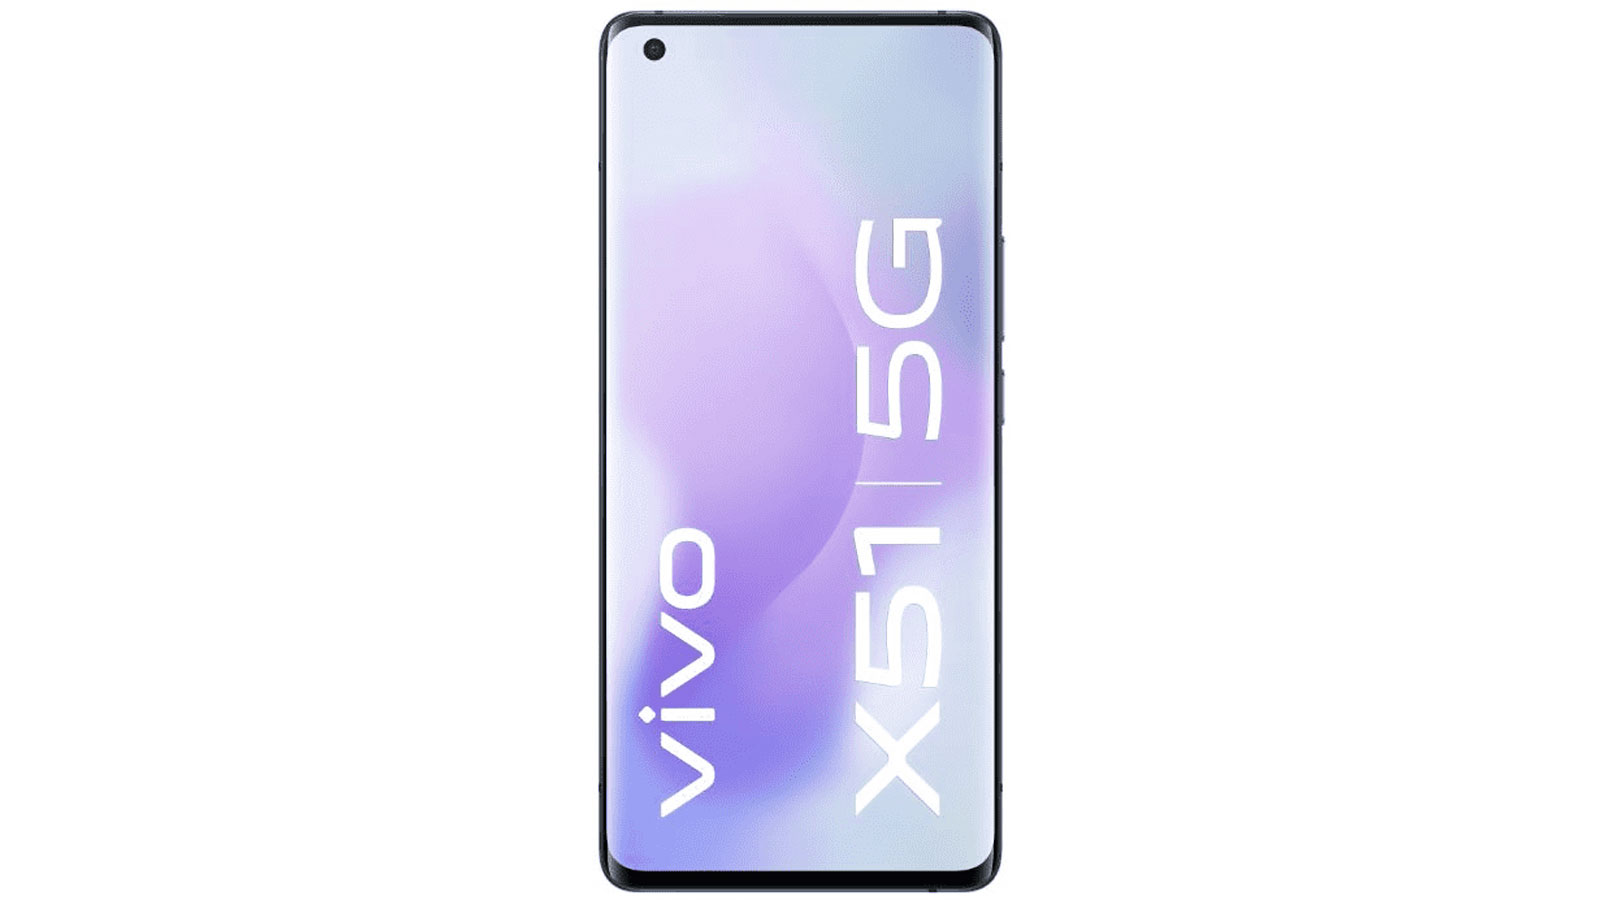 Vivo X51 5G